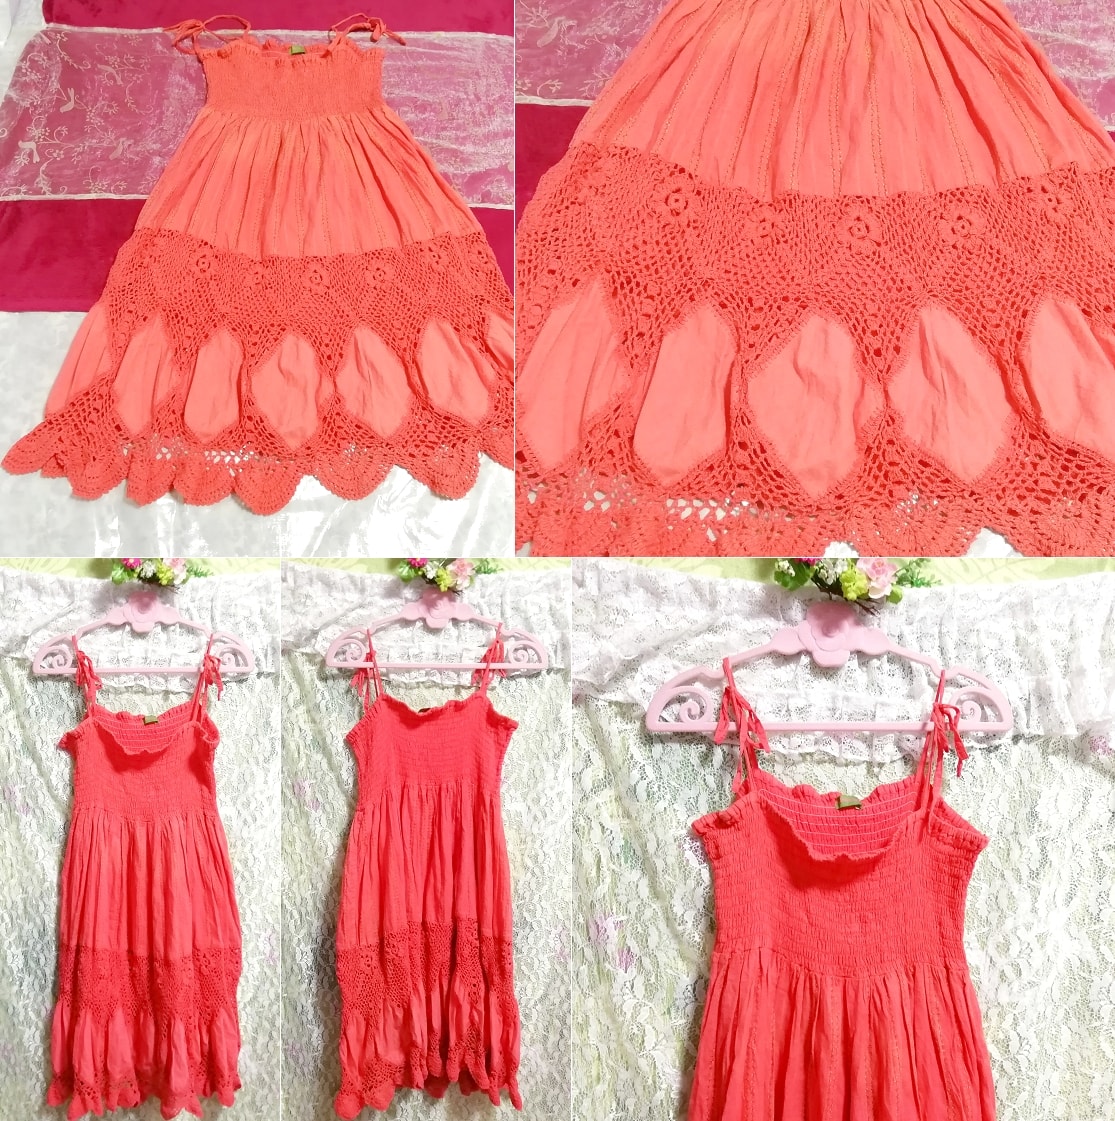 インド製赤ピンク綿コットン100%ネグリジェキャミソールワンピース Made in India red pink cotton 100% negligee camisole dress, ワンピース, ひざ丈スカート, Mサイズ